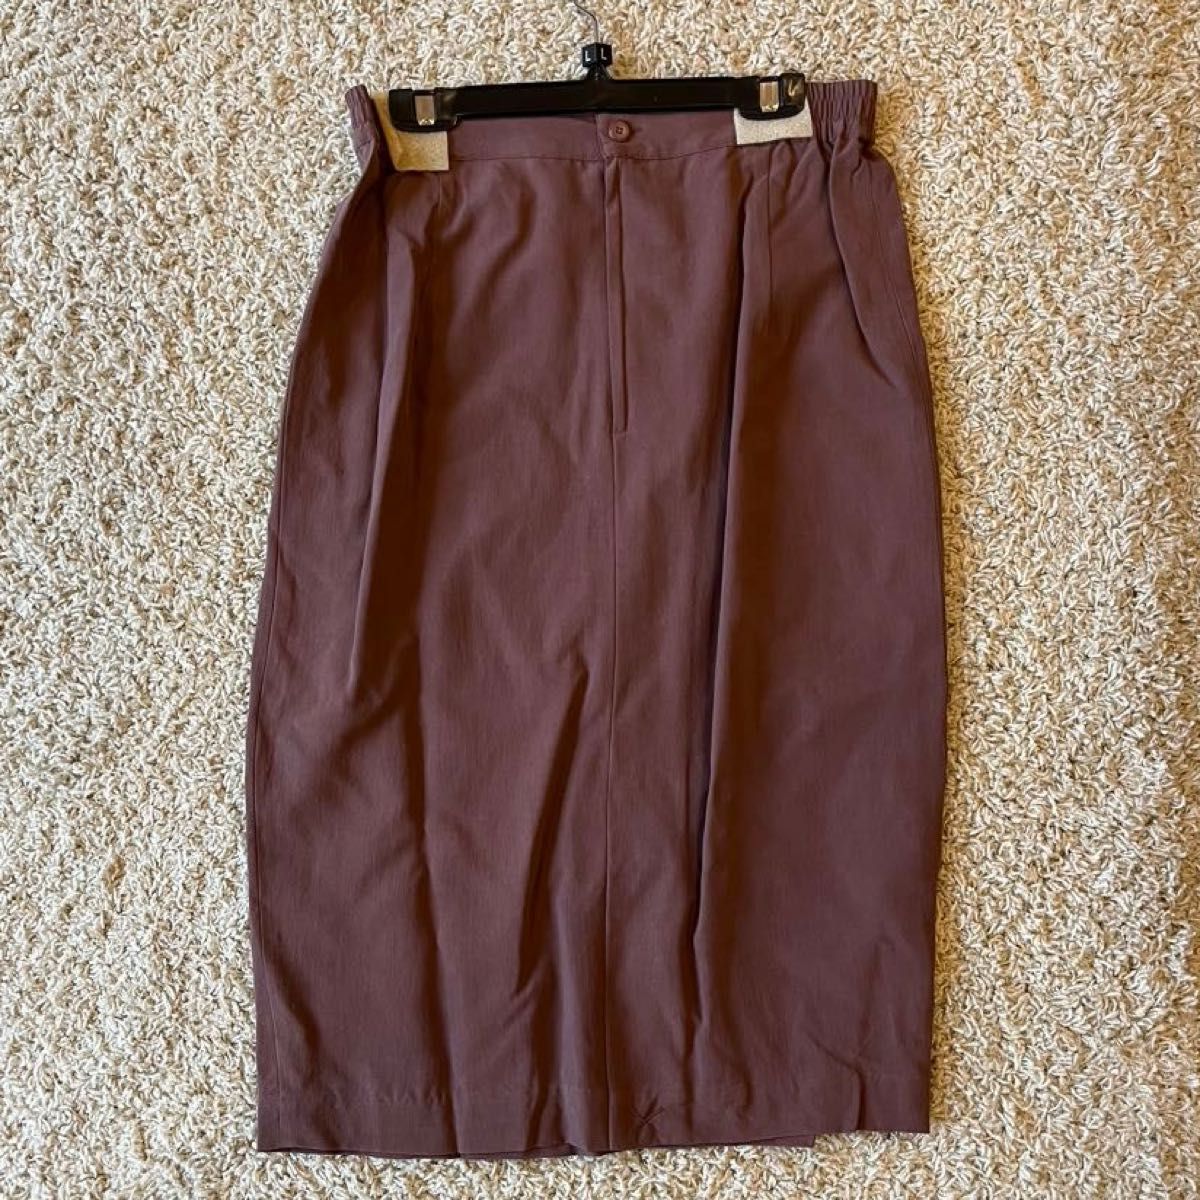 jasmiスーツ ダブル 赤茶 絹100% セットアップ スカート 新品タグ付 テーラードジャケット シルク